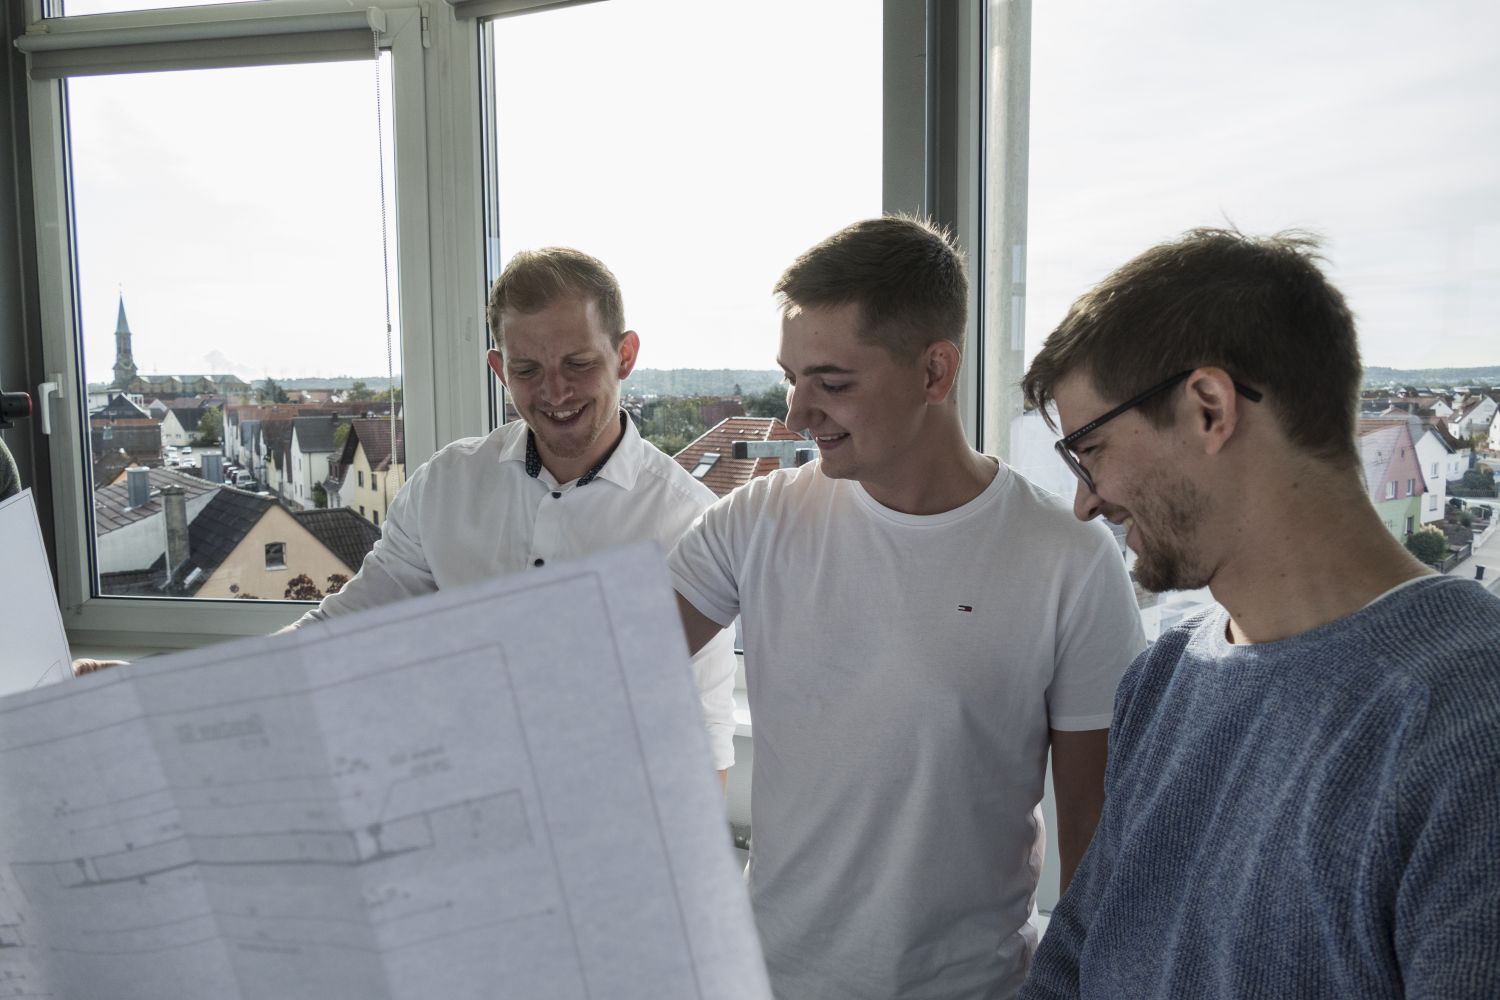 Drei Männer freuen sich beim Betrachten eines Architekturplans.